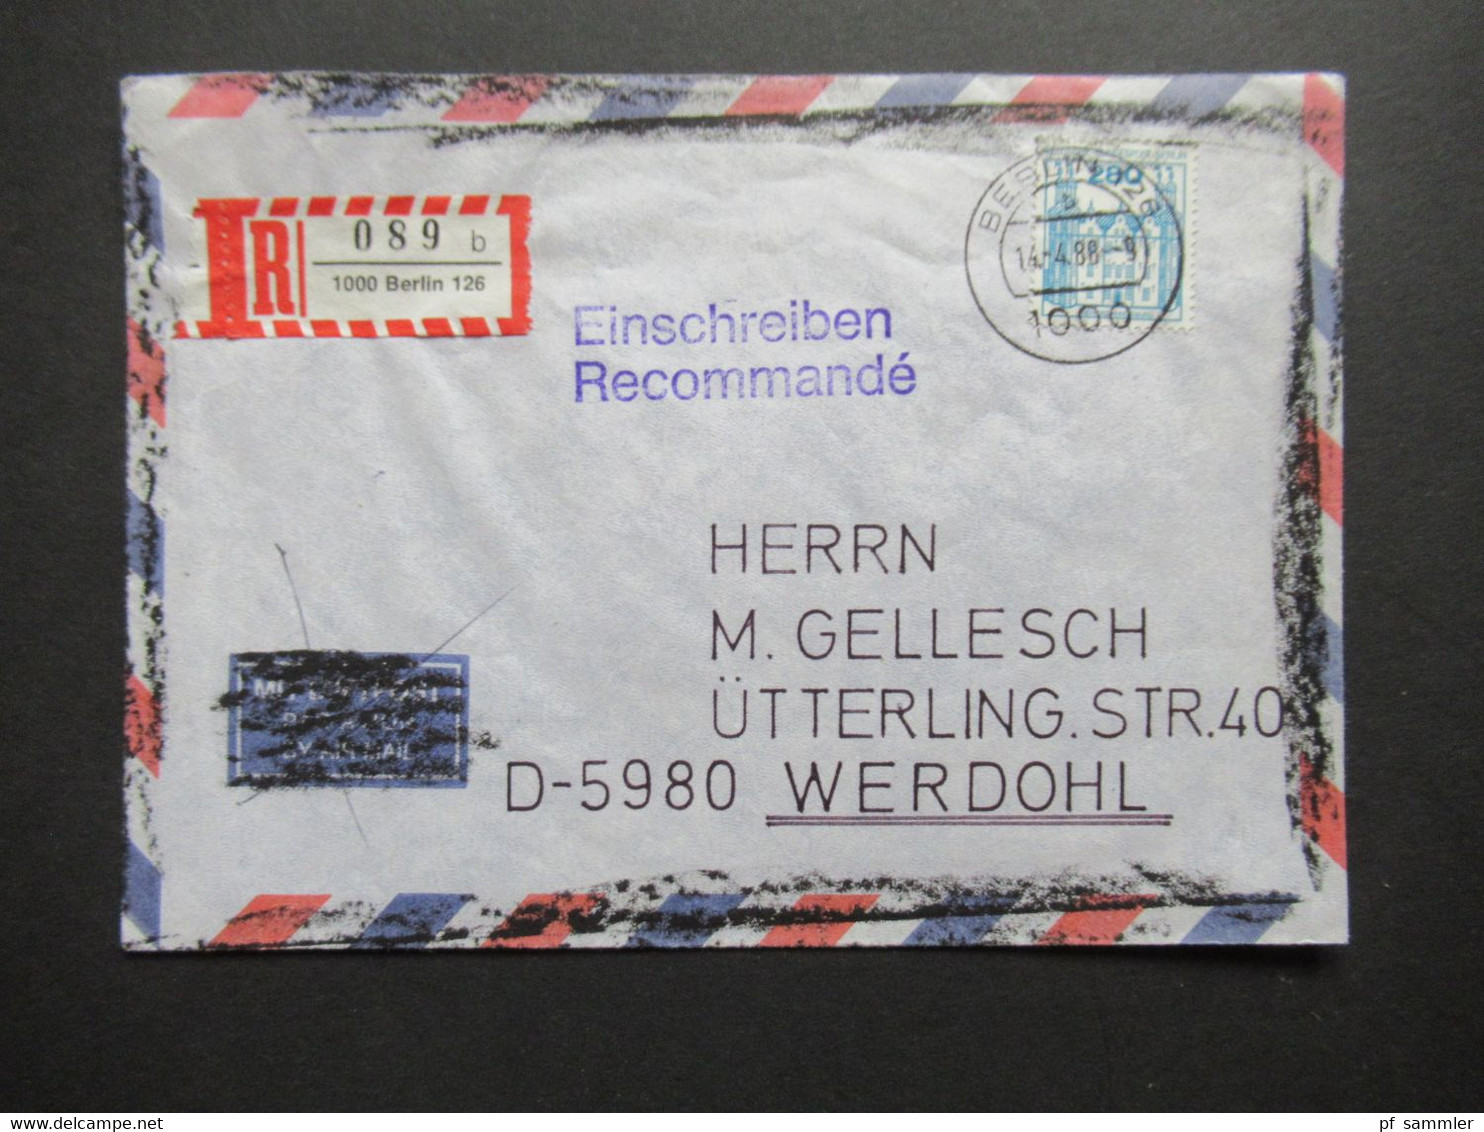 Berlin 1988 BuS Michel Nr. 676 EF Einschreiben Recommandé Berlin 126 - Werdohl Luftpost Umschlag Geschwärzt!! - Covers & Documents